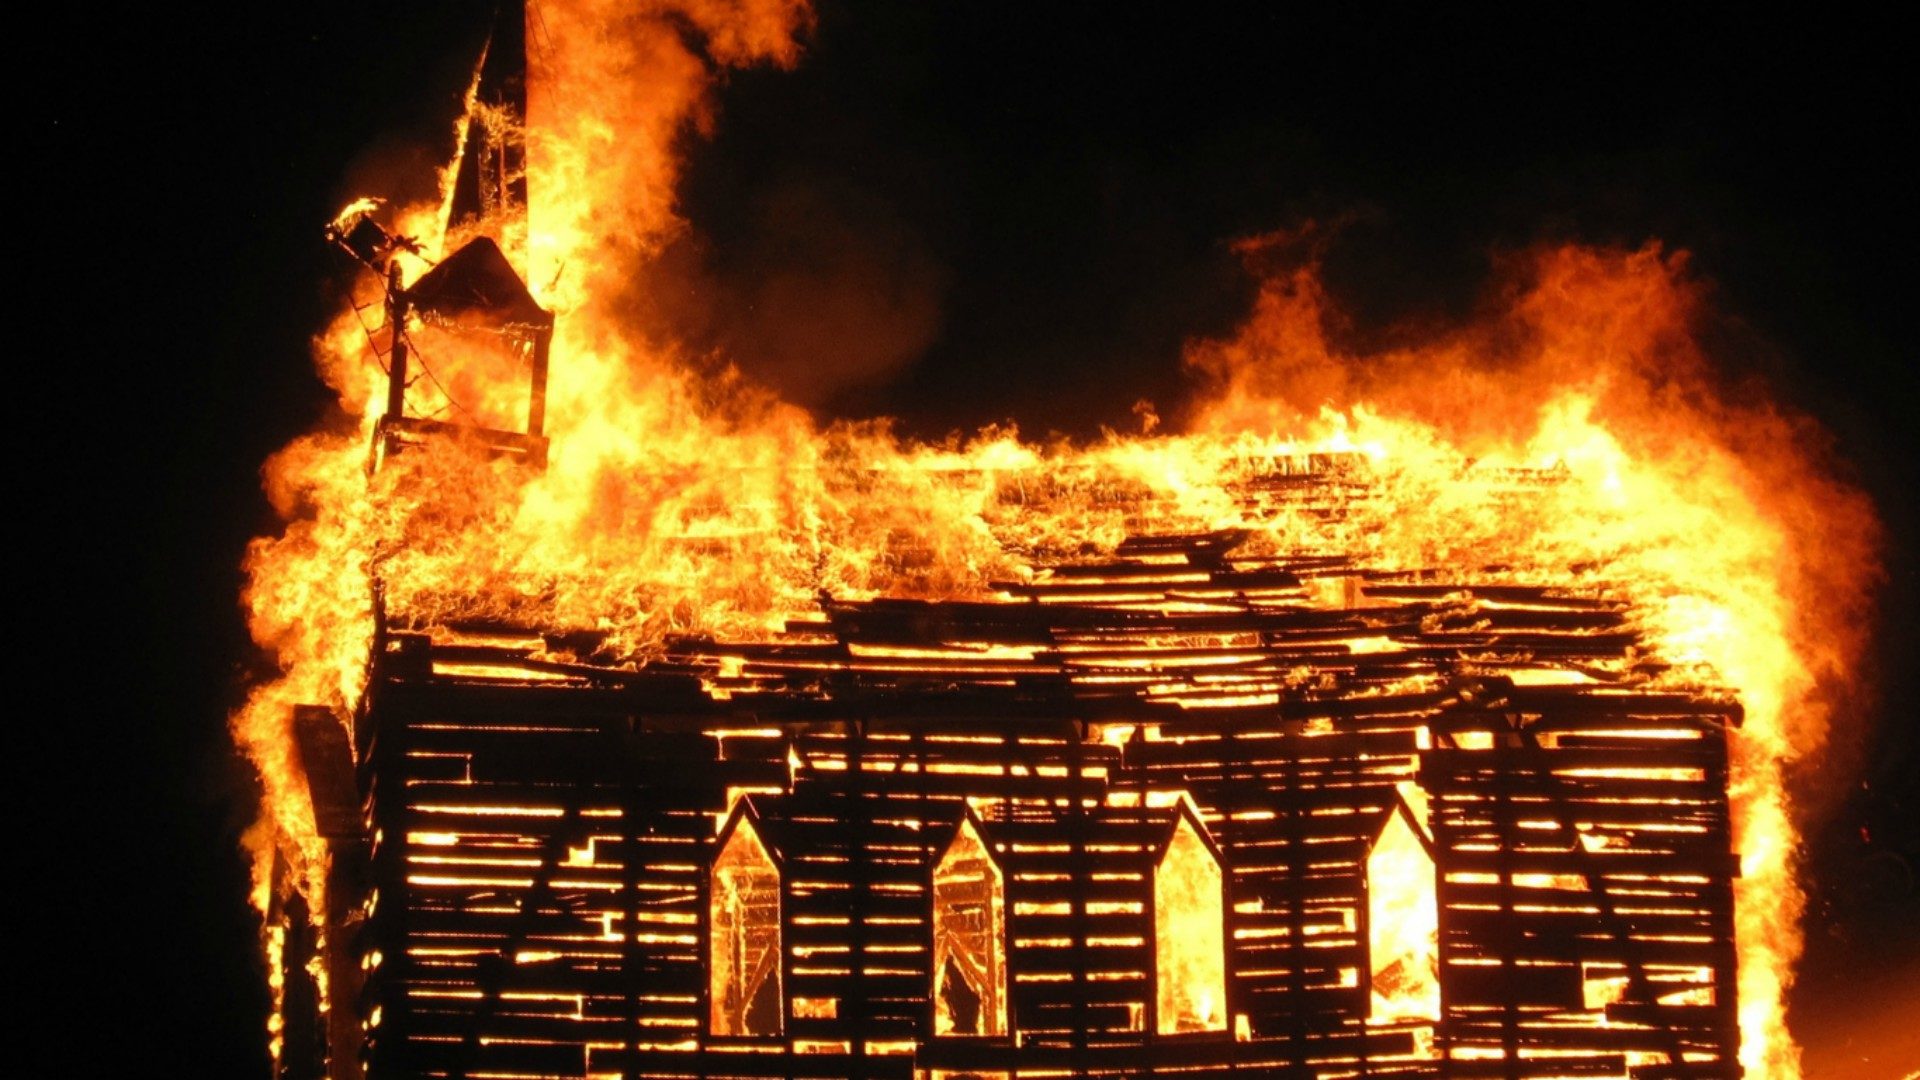 Népal: cinq églises incendiées en une semaine - Portail catholique suisse 